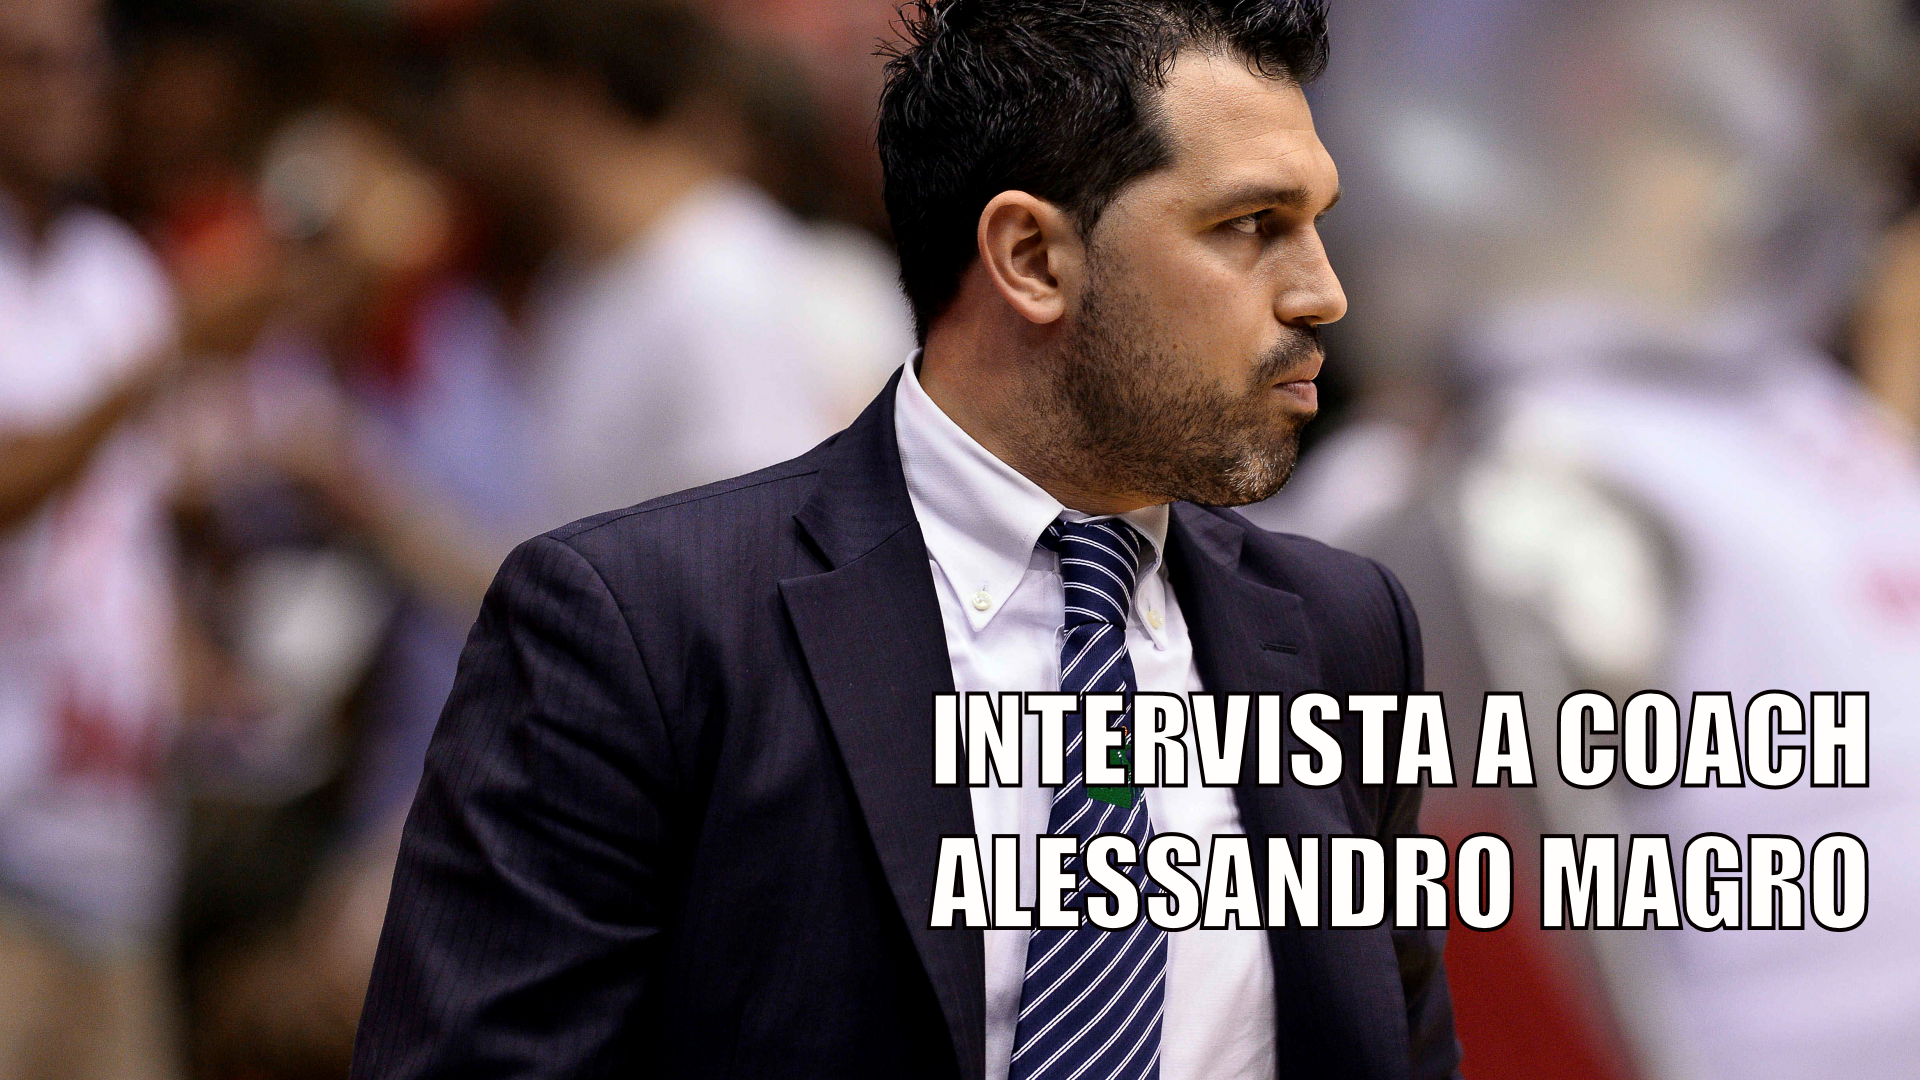 <p>Intervista a Coach Alessandro Magro</p>
